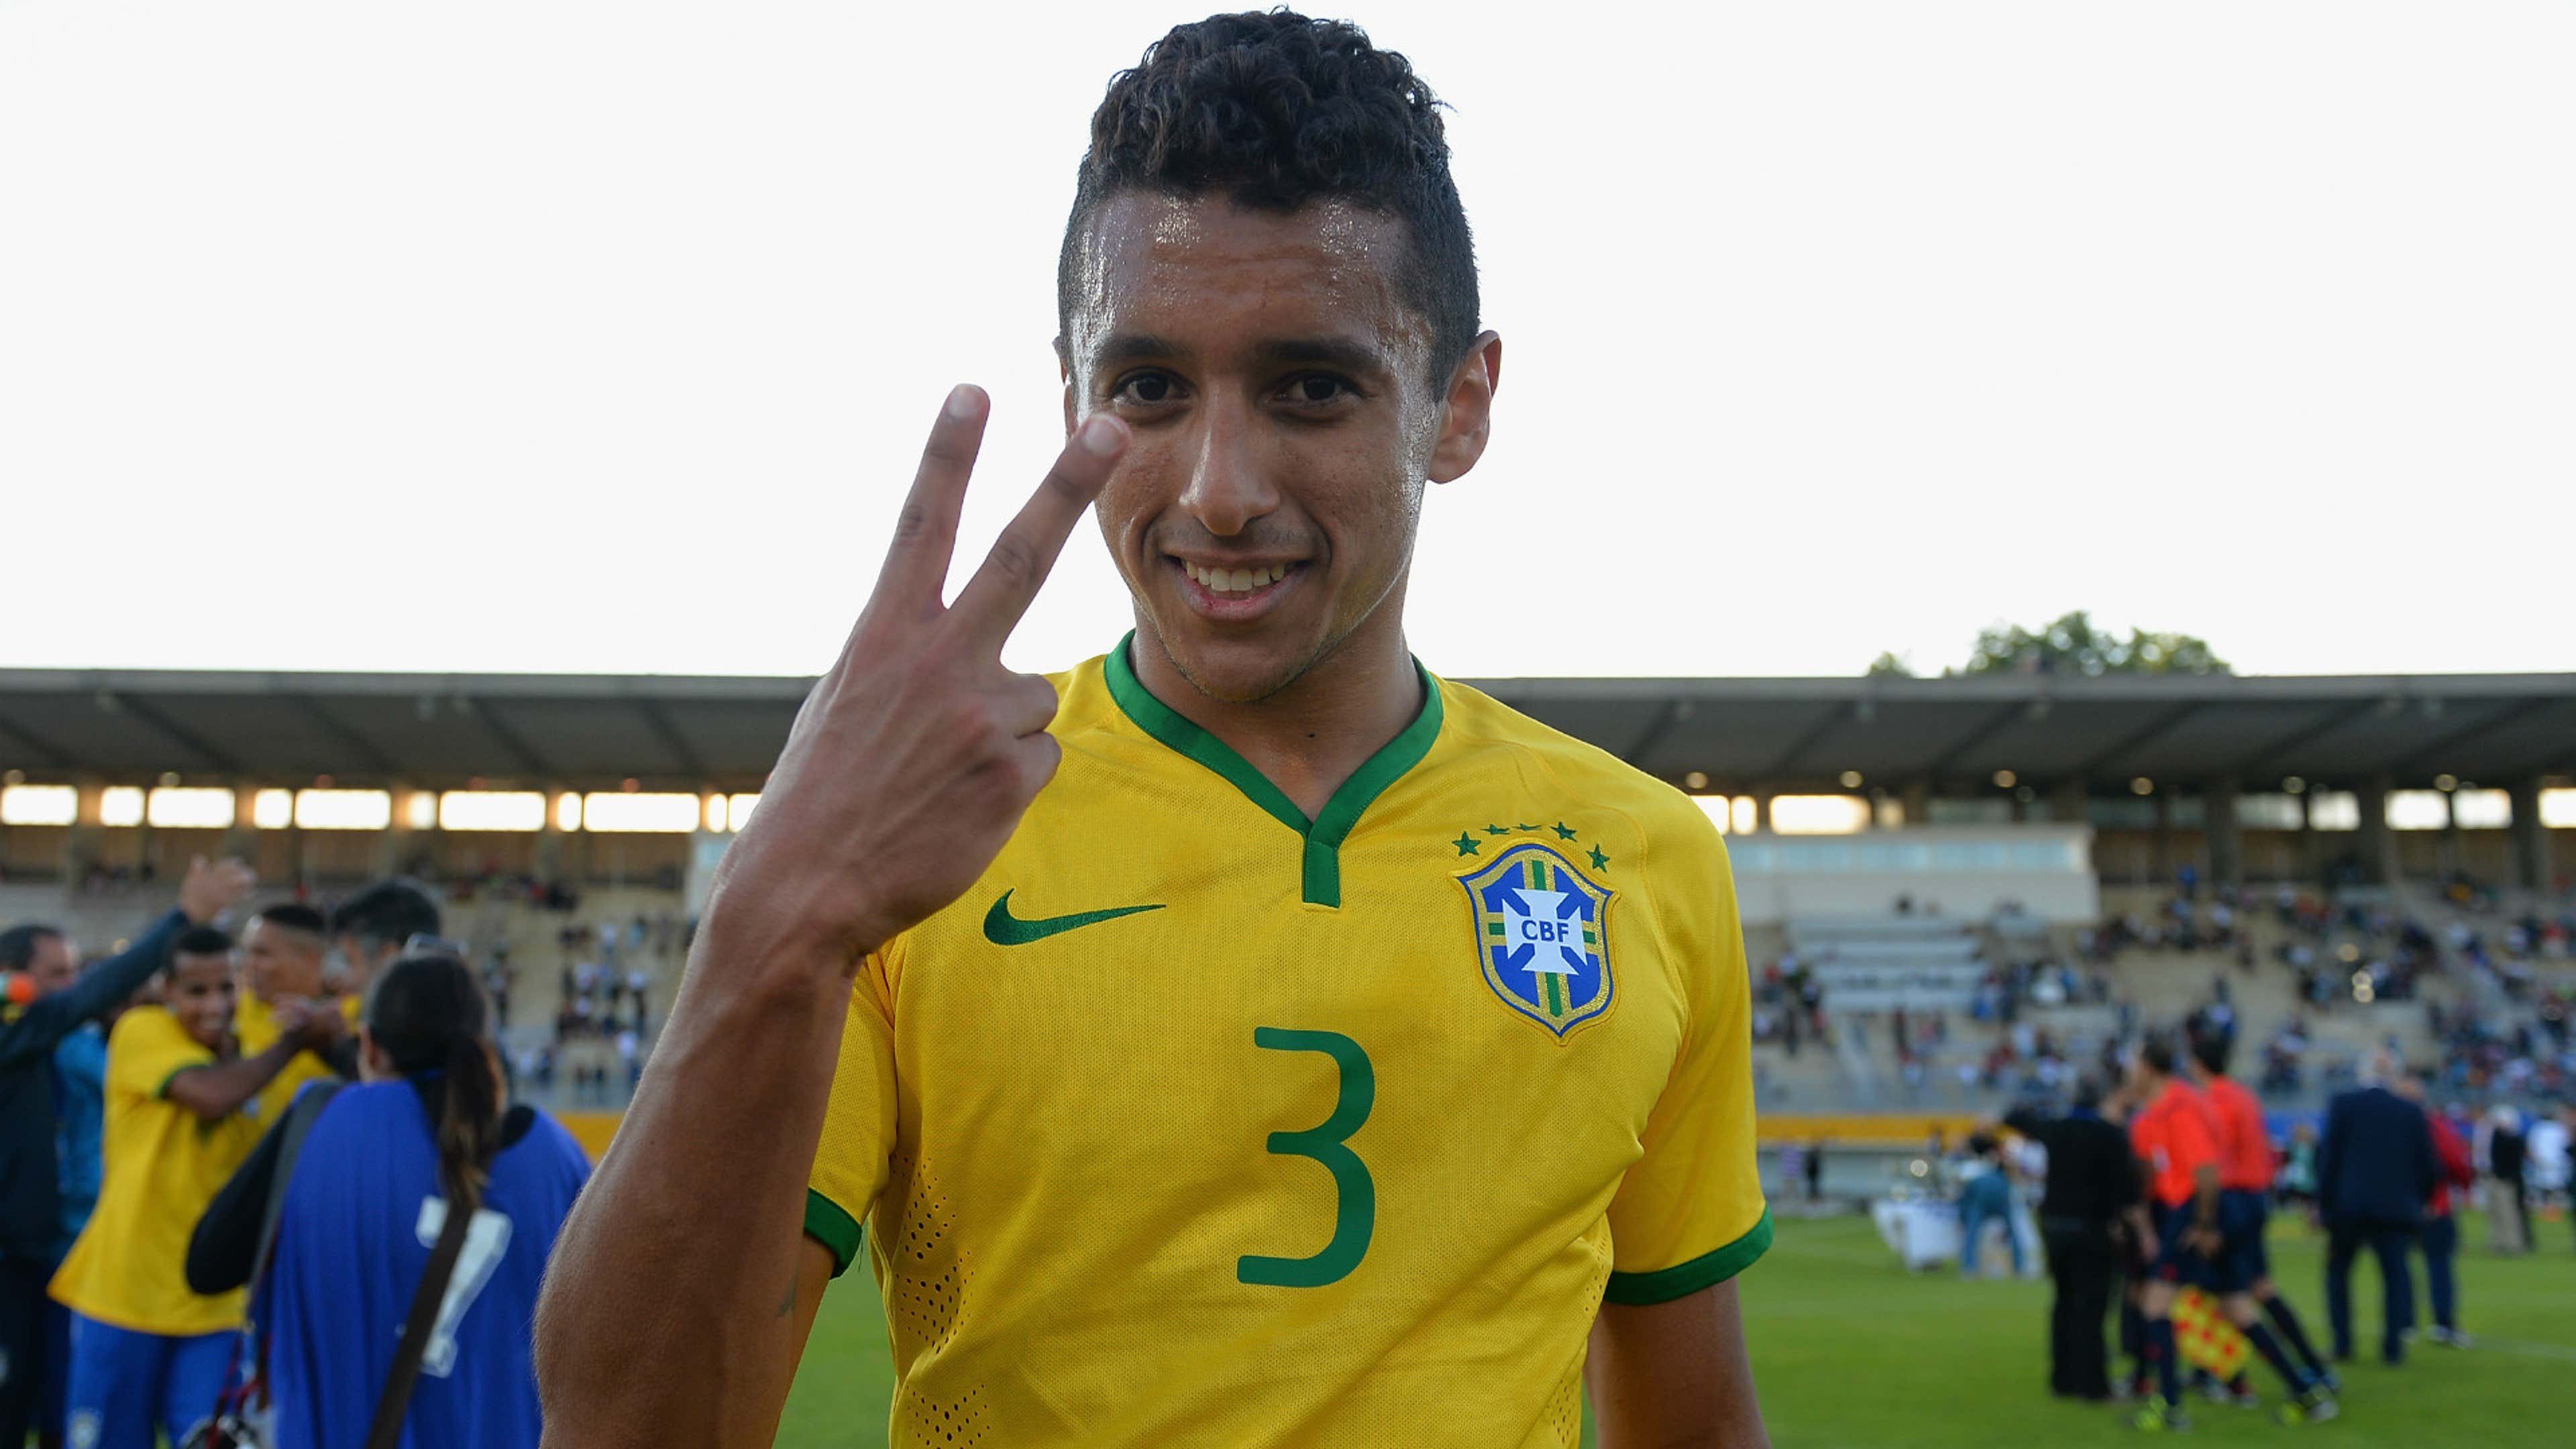 Neymar Jr Brasil Soccerstarz Soccer ⚽ Figure 2 with Brazilian Uniform # 10